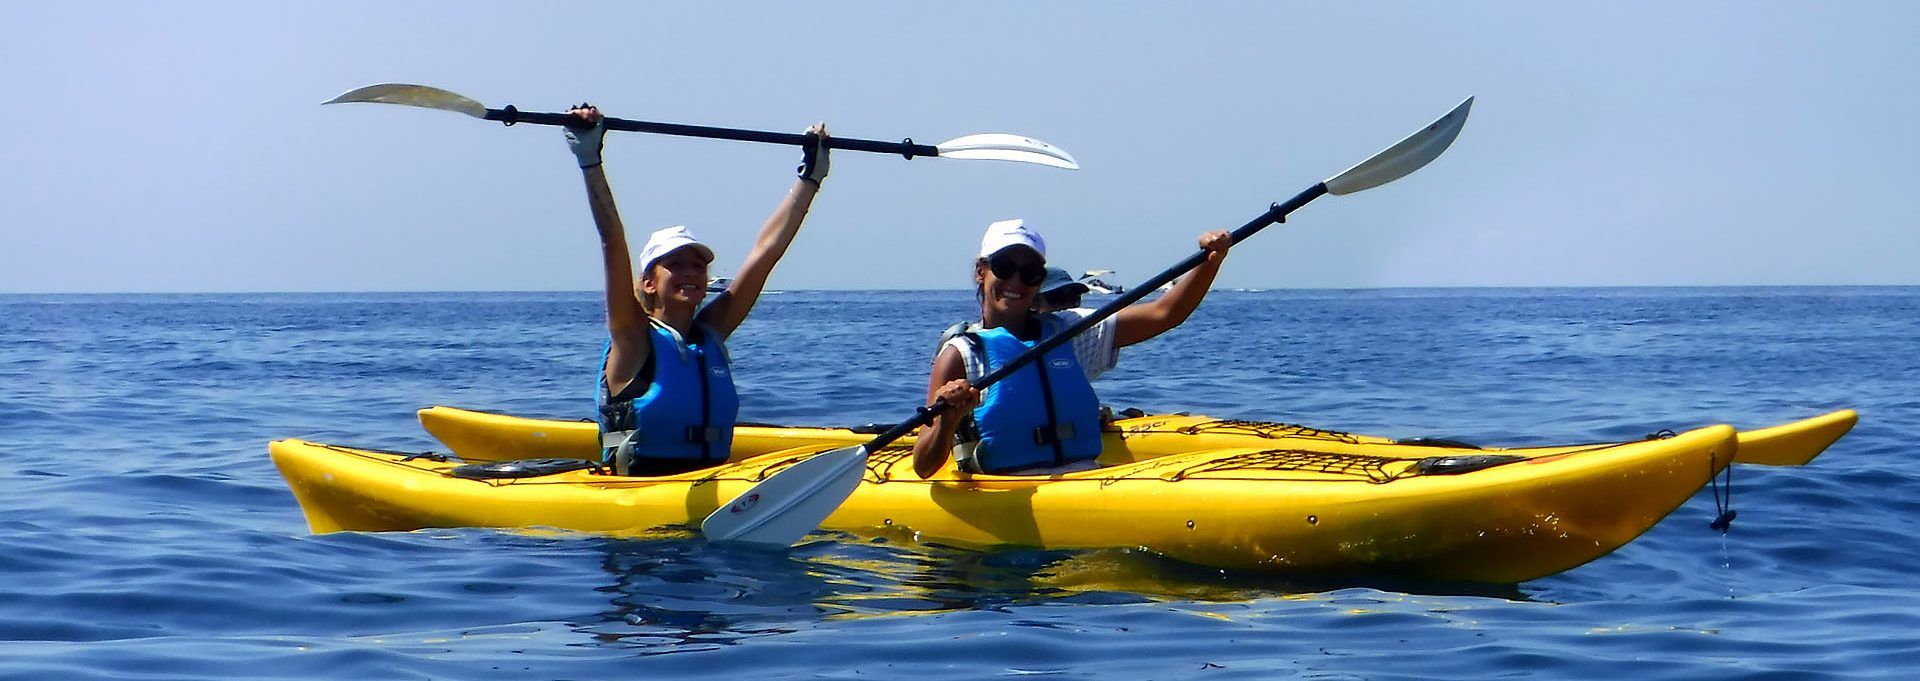 trip to kayak|kayaking travel planner app